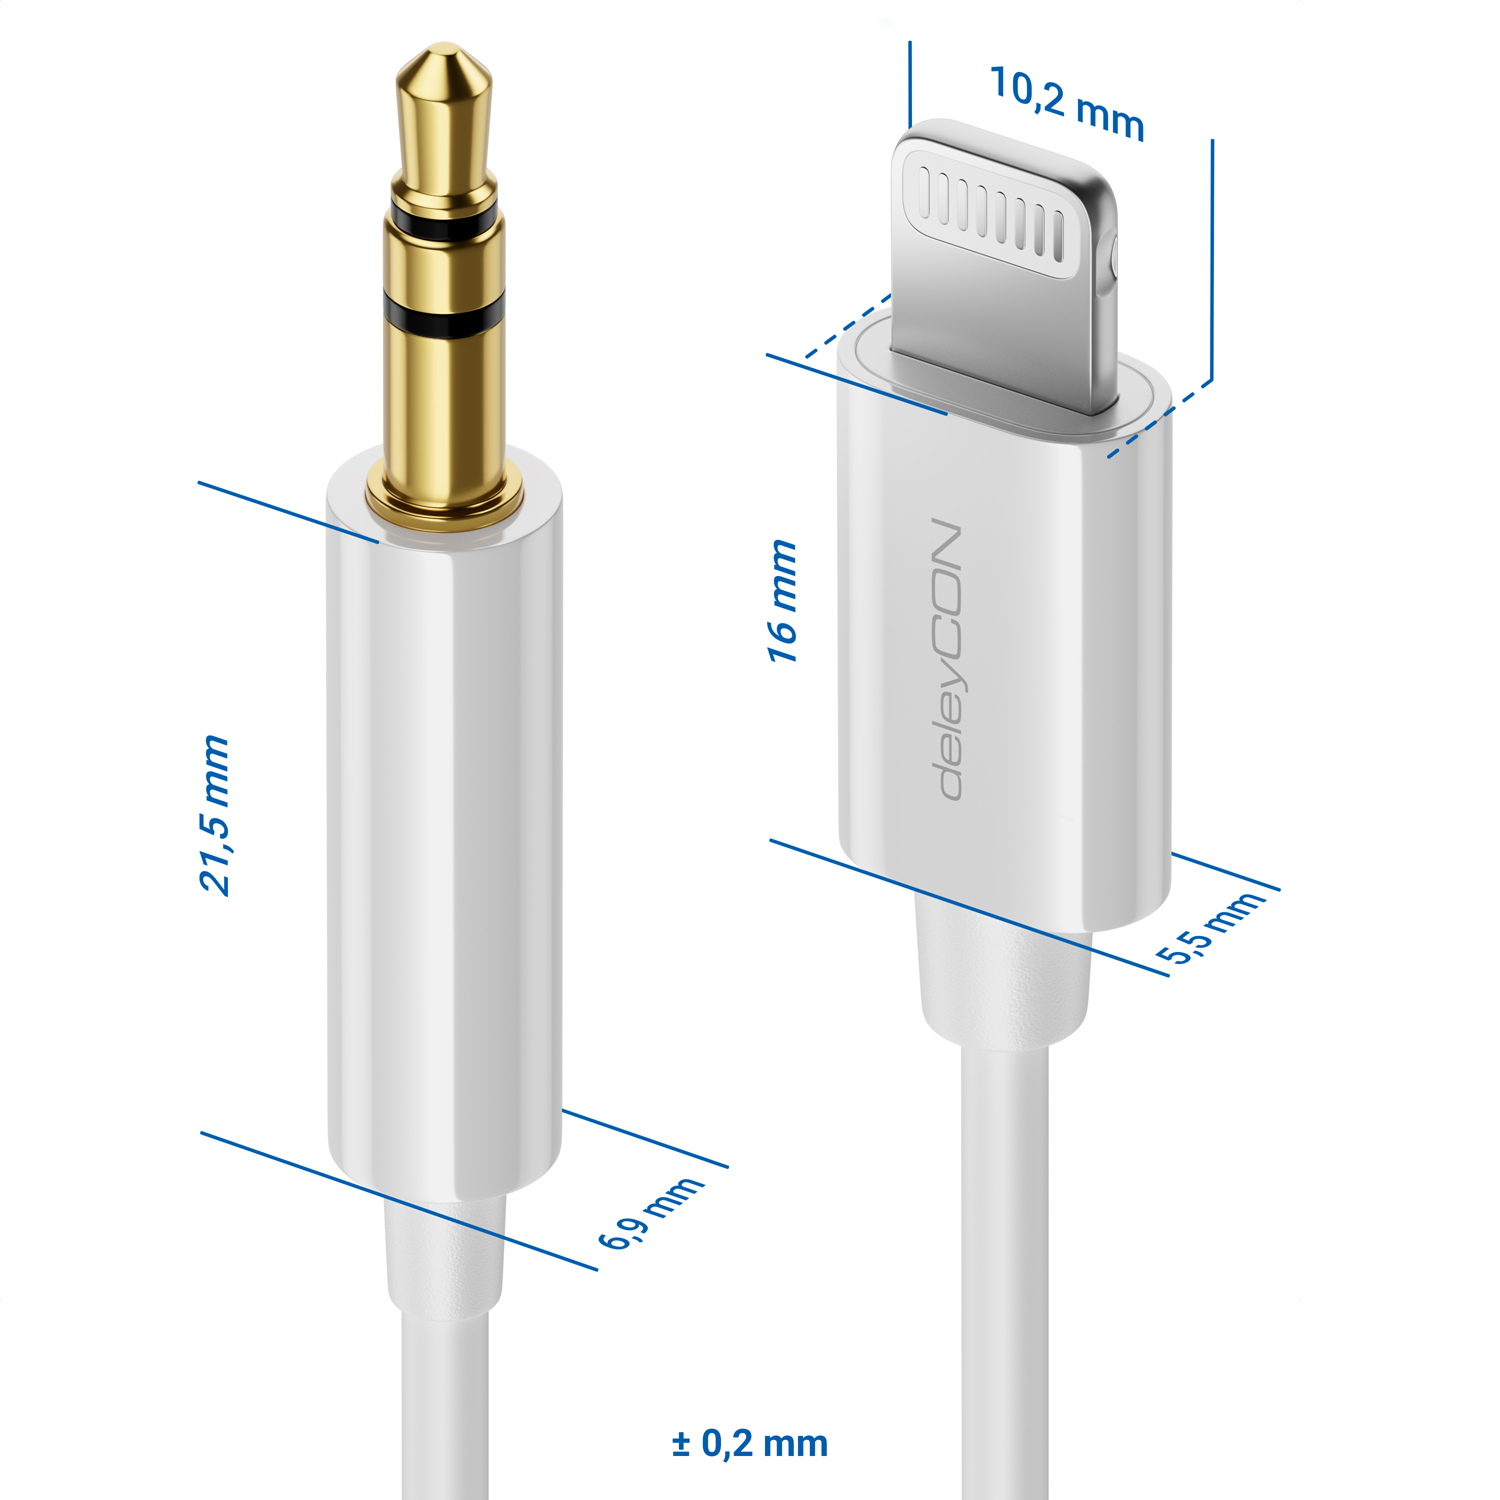 deleyCON Kopfhörer Adapter für iPhone Lightning 8-Pin auf 3,5mm Klinke  Schwarz, Klinke, Kabel & Adapter